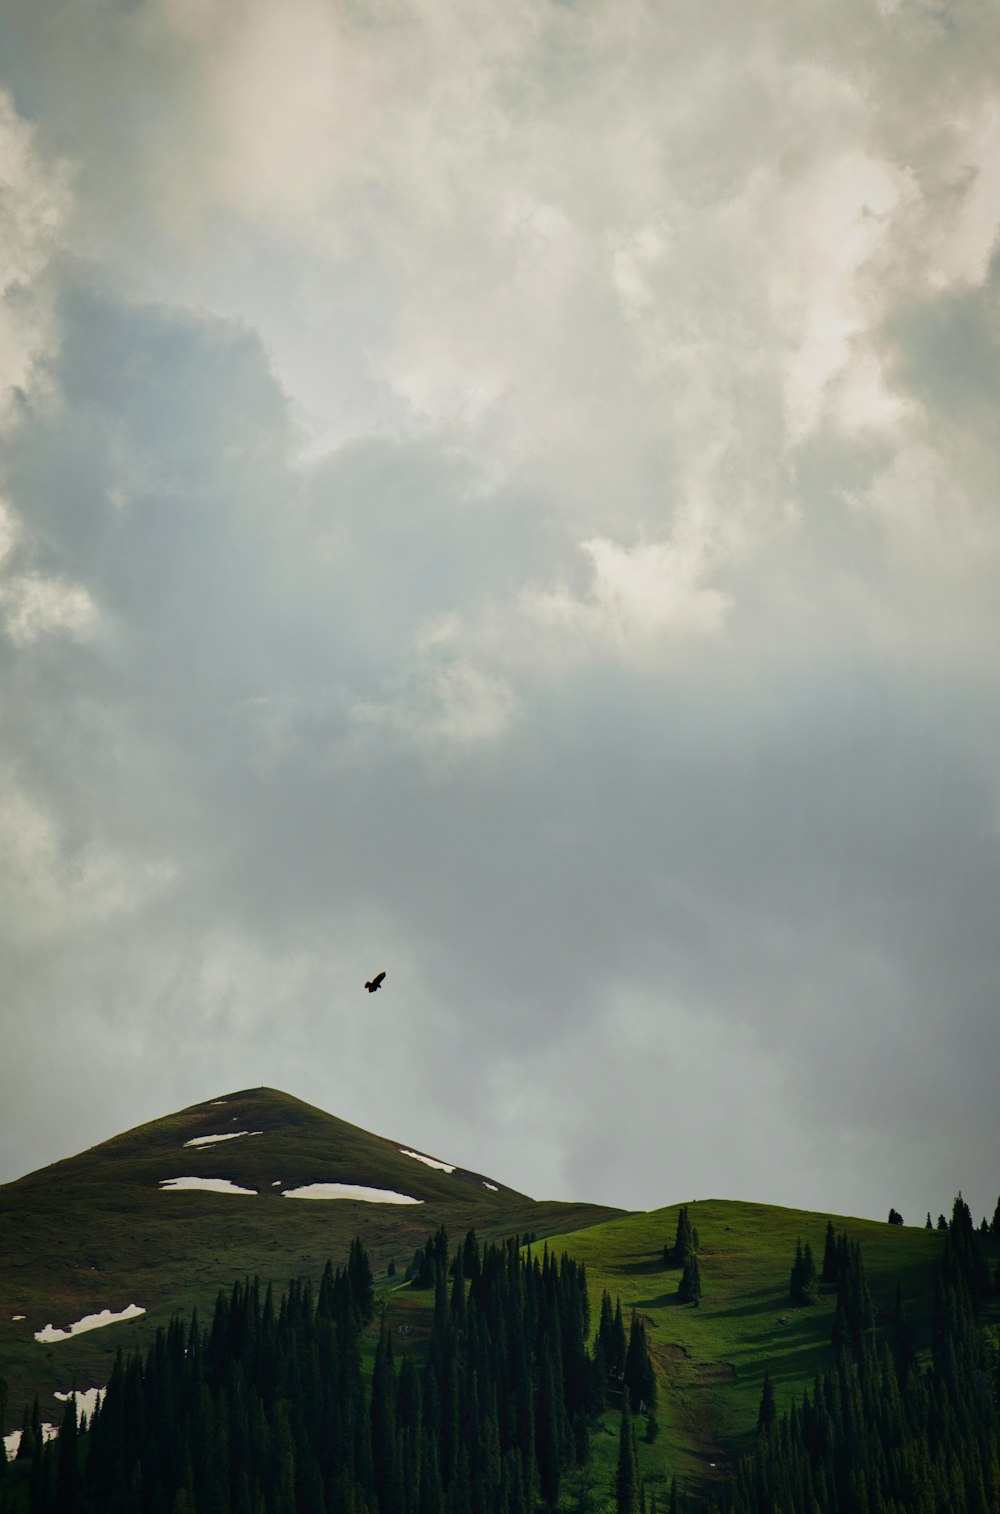 Un oiseau survolant une colline verdoyante sous un ciel nuageux